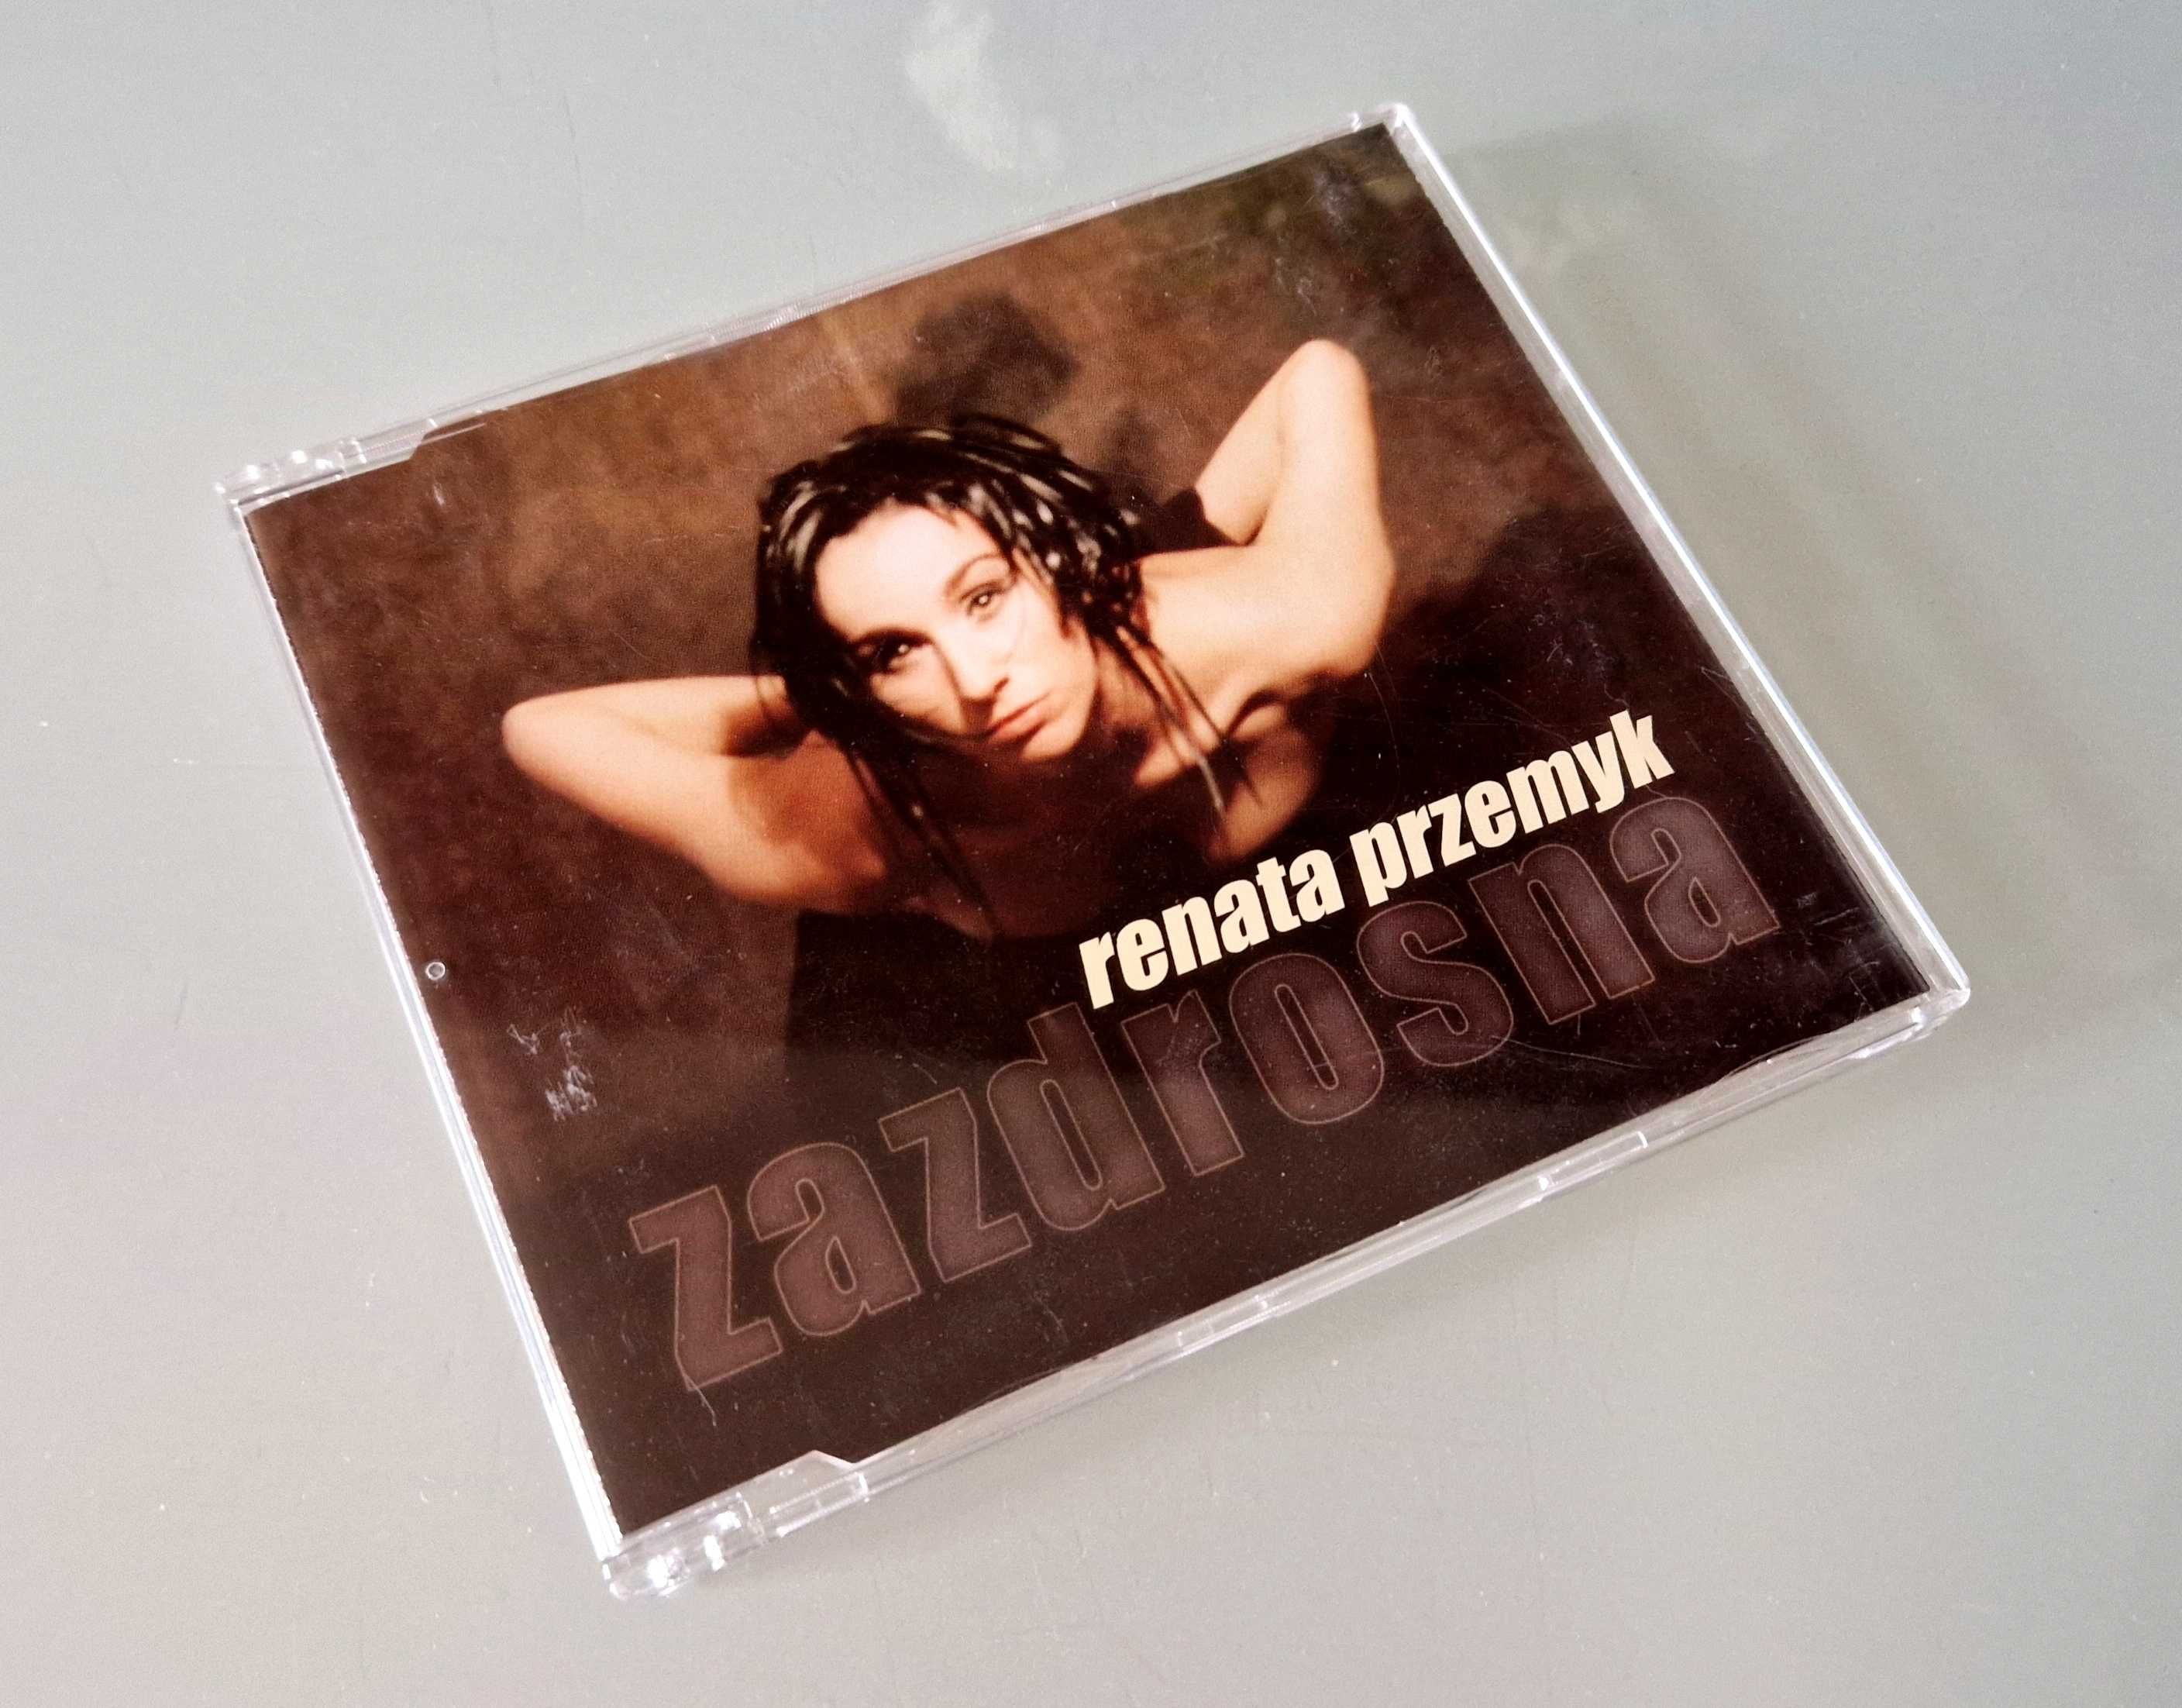 Płyta CD / singiel, promo Renata Przemyk - Zazdrosna